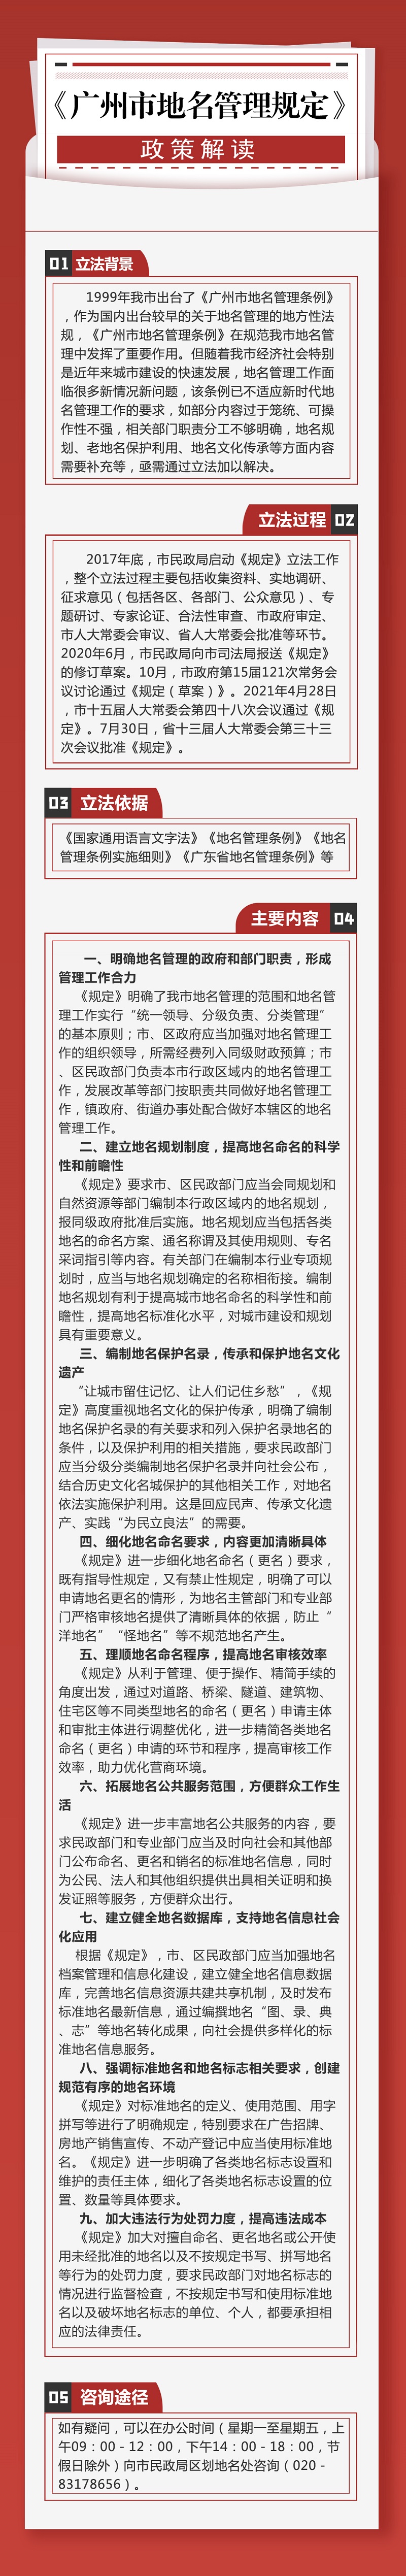 （一图读懂）《广州市地名管理规定》政策解读.jpg